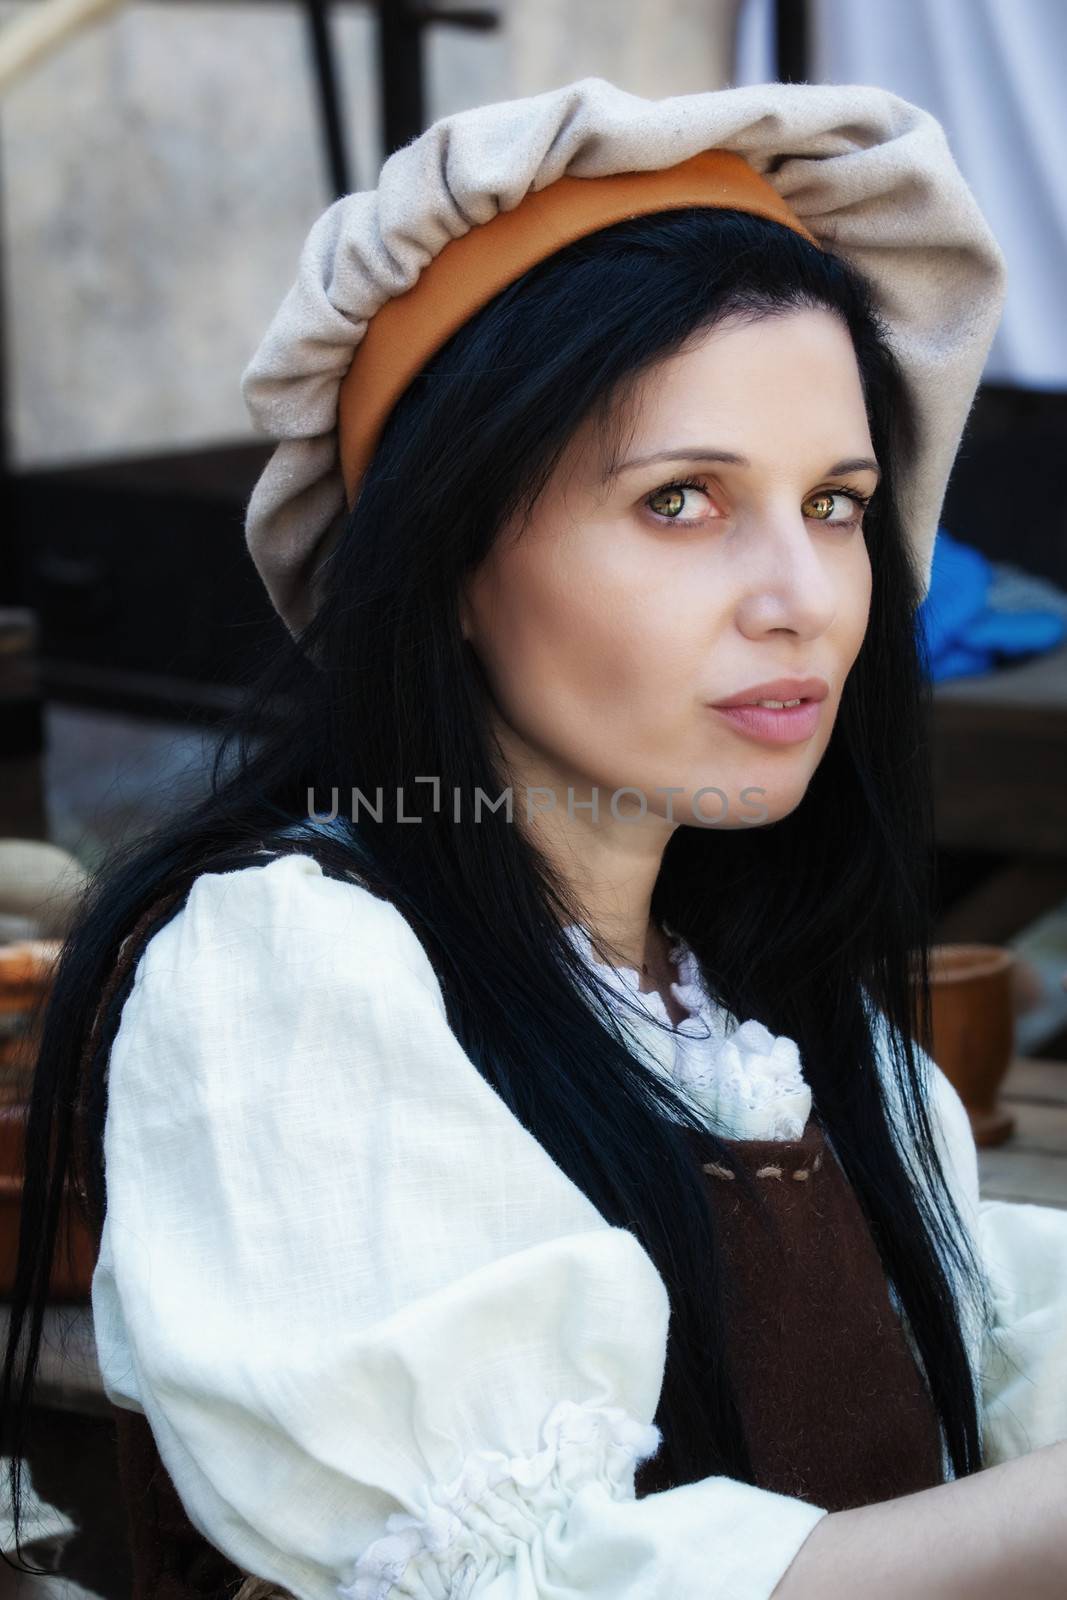 MDINA, MALTA - APR 13 - People in medieval costume taking part in the Medieval Mdina festival in Mdina on 13 April 2013